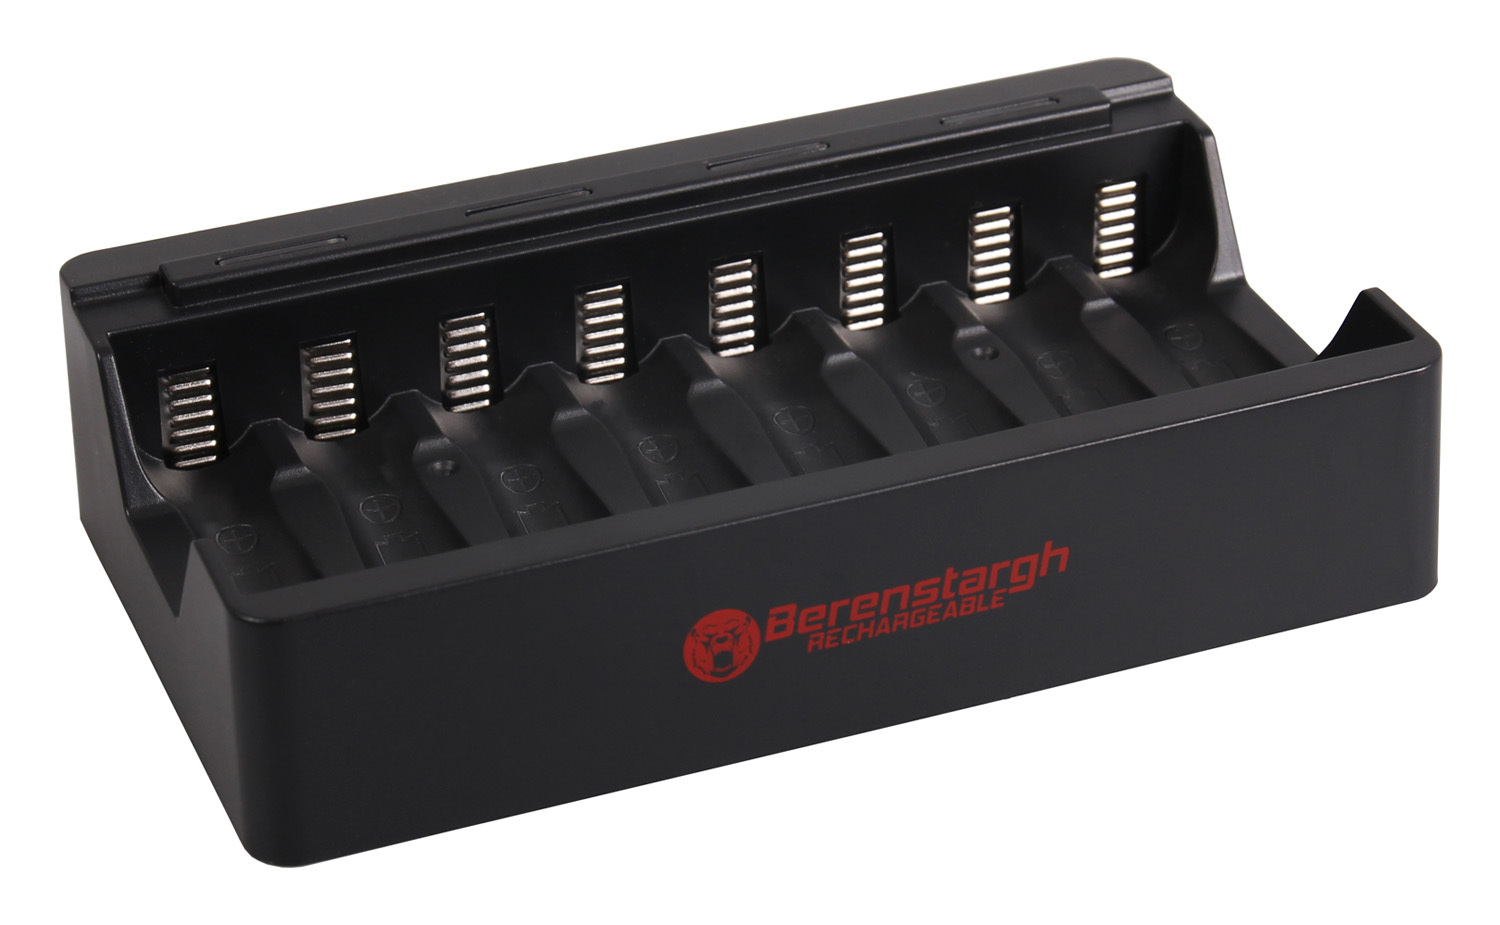 - (compatible) Berenstargh USB snellader voor 1-8 x AA of AAA batterijen